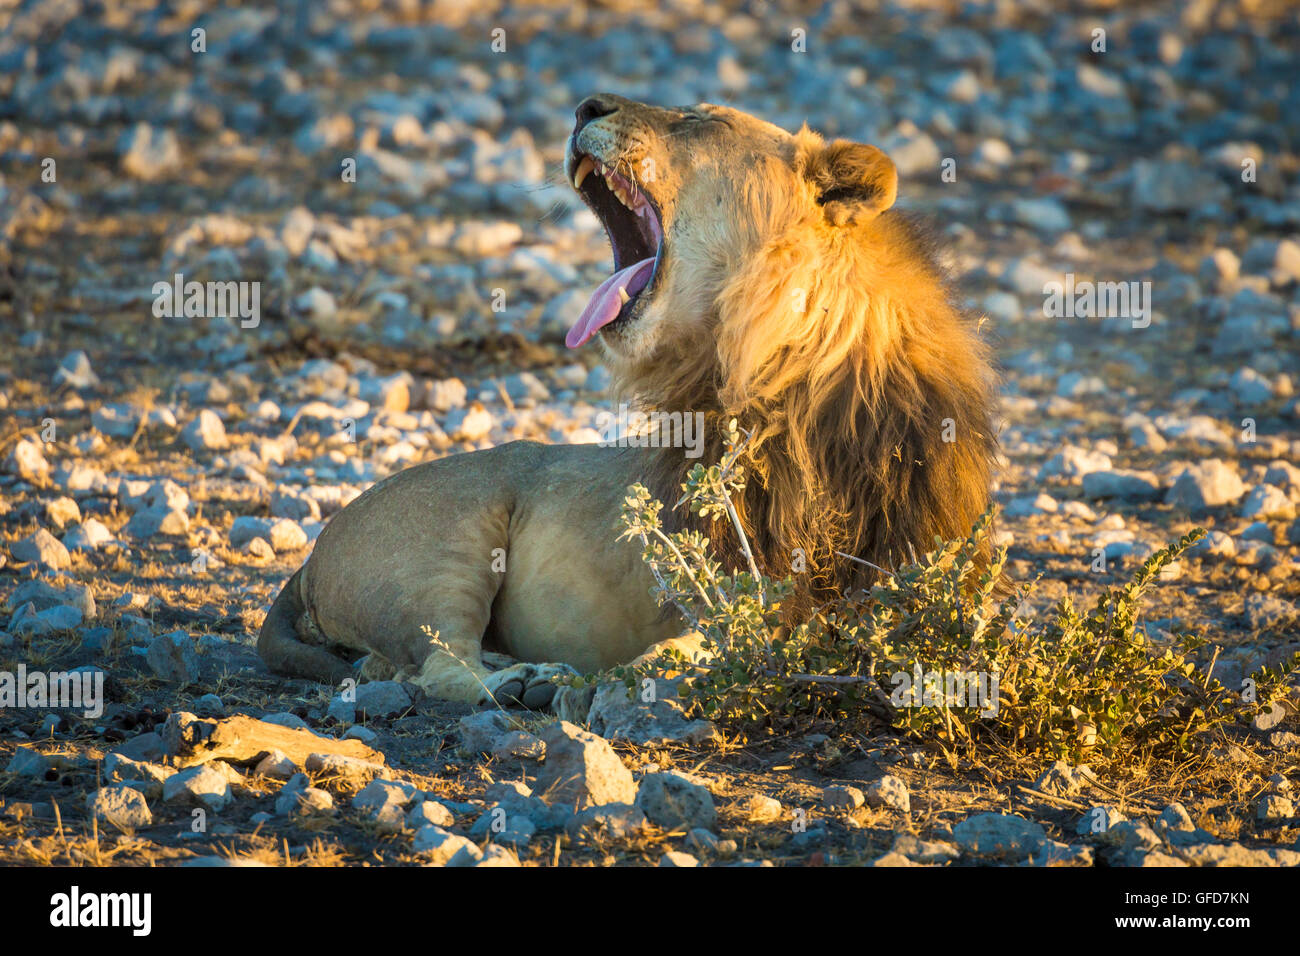 Yawning lion in Etosha National Park, Namibia, Africa Stock Photo